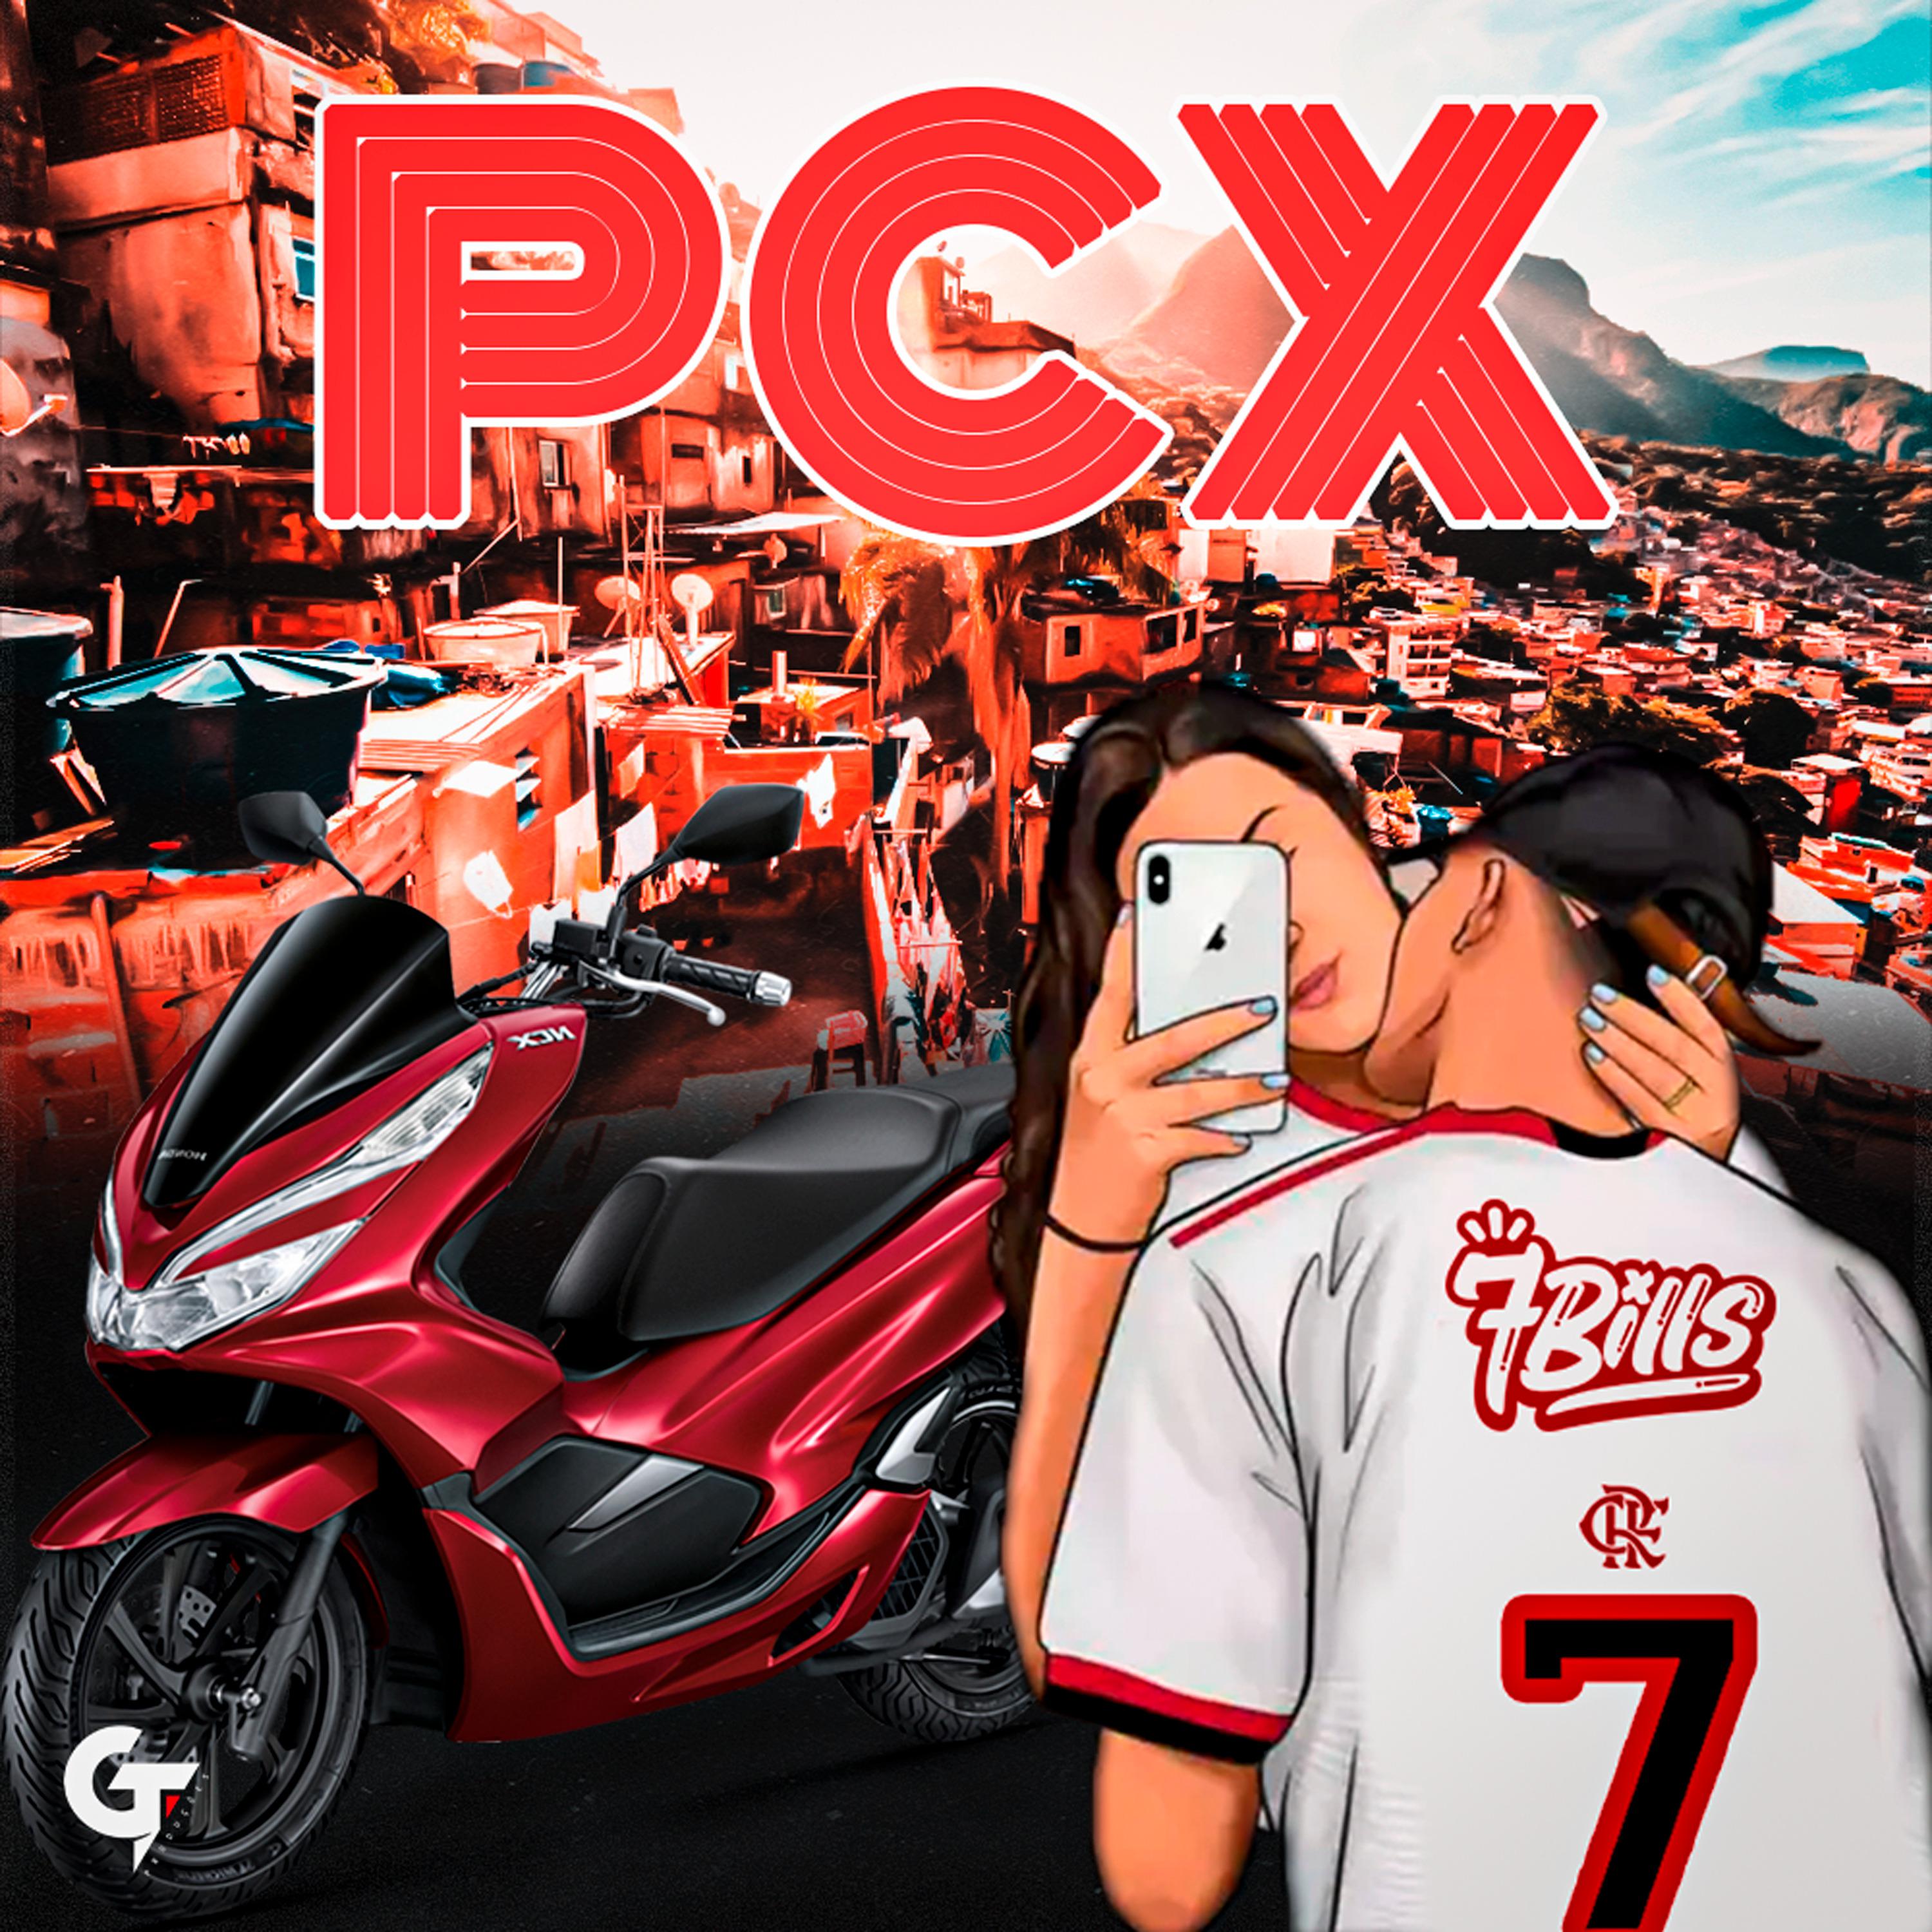 Постер альбома Pcx